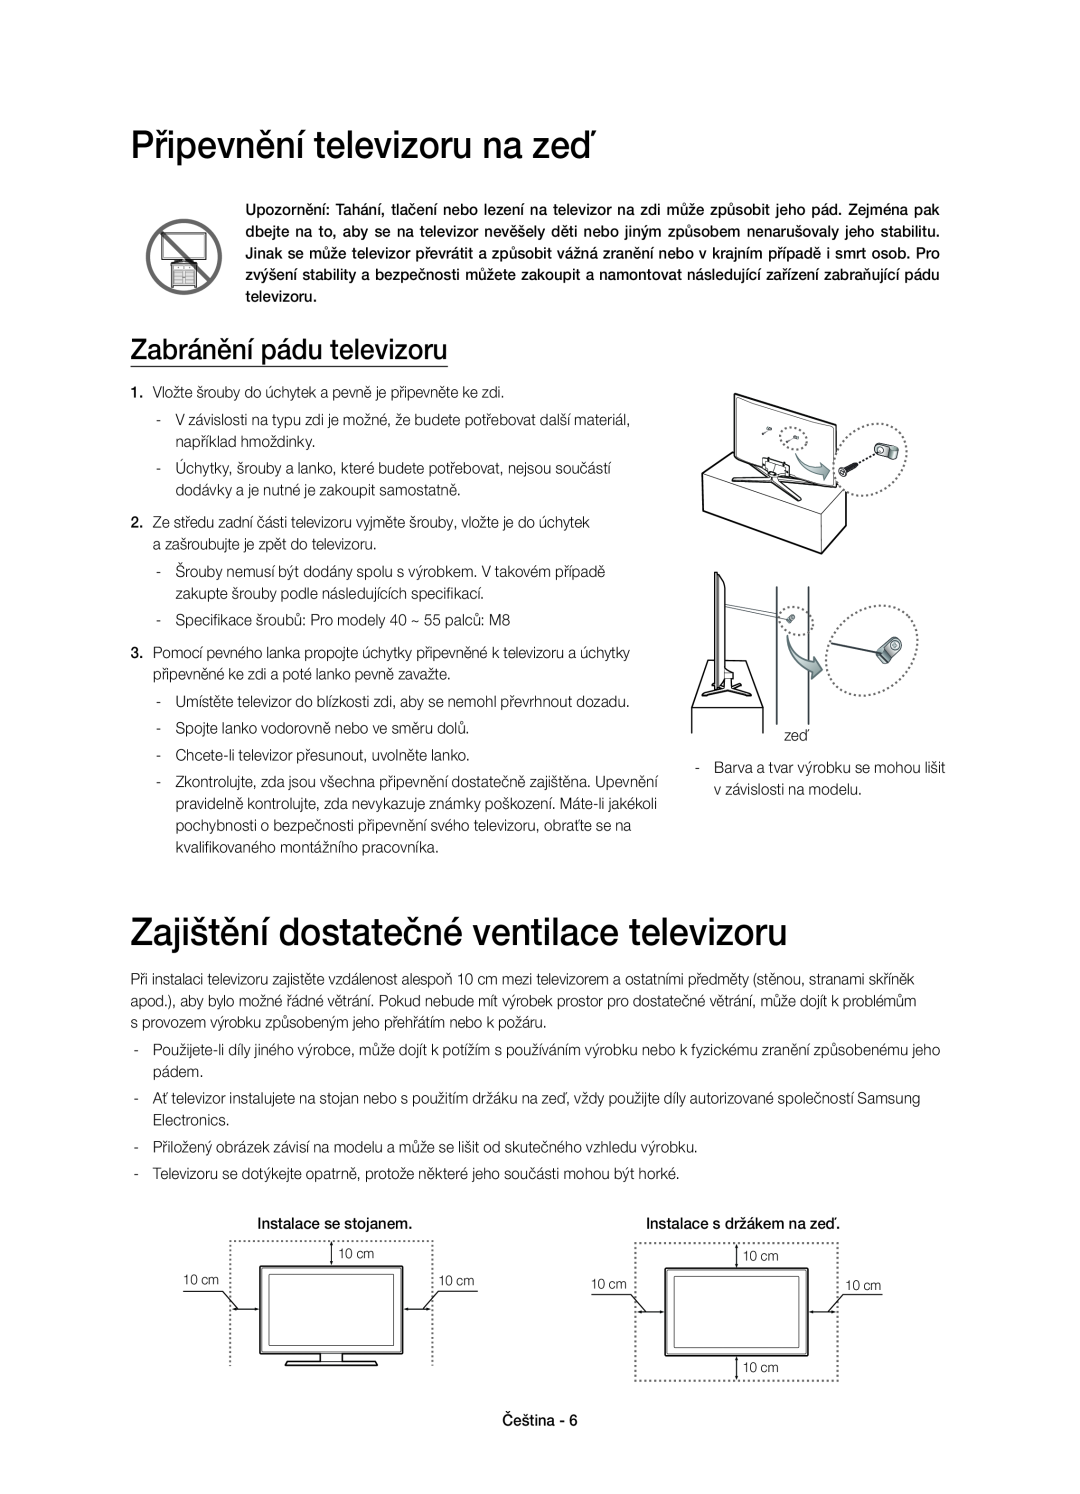 Samsung UE48H6640SLXZF Připevnění televizoru na zeď, Zajištění dostatečné ventilace televizoru, Zabránění pádu televizoru 